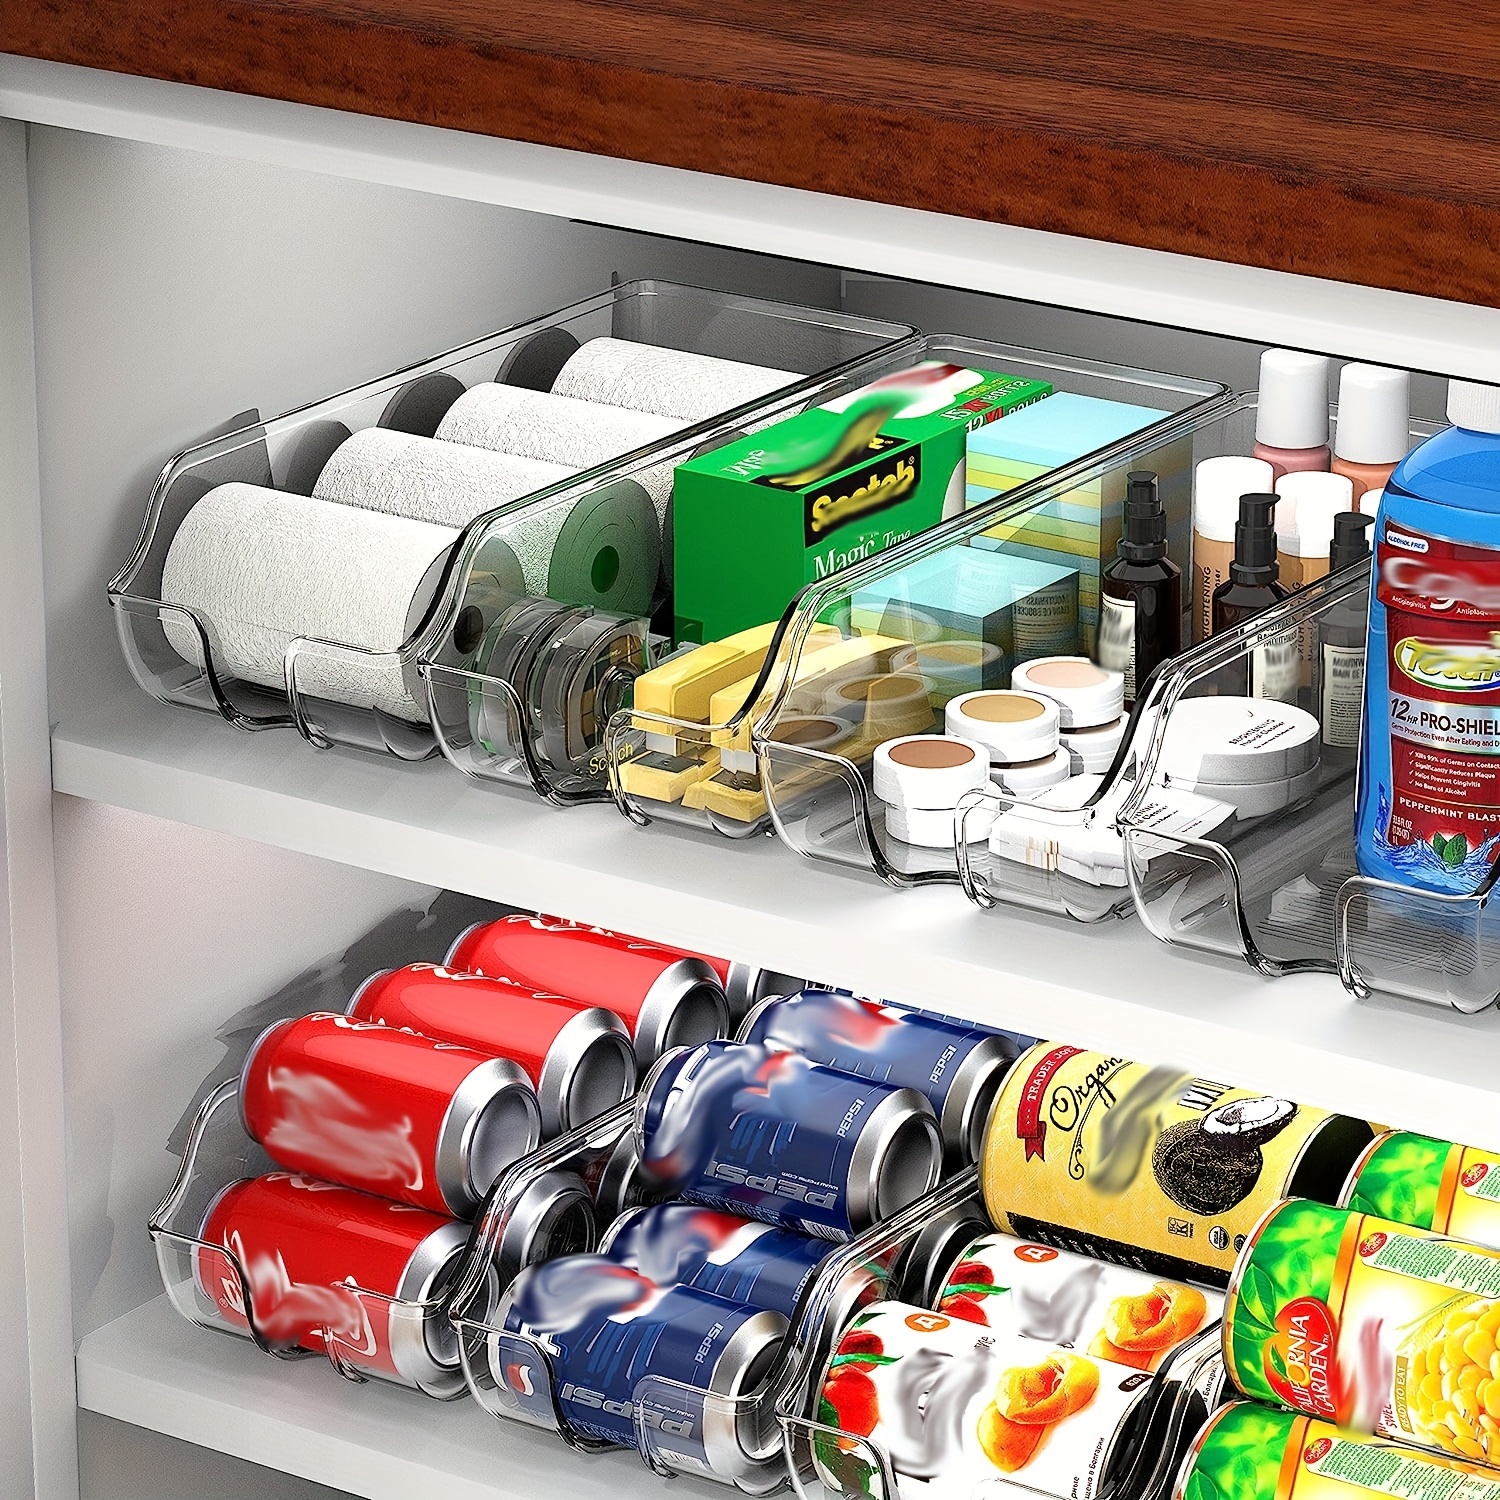 HOMQUEN Organizador de latas de soda para refrigerador, congelador,  encimera, armarios, despensa. Organizador de bebidas y alimentos enlatados  para